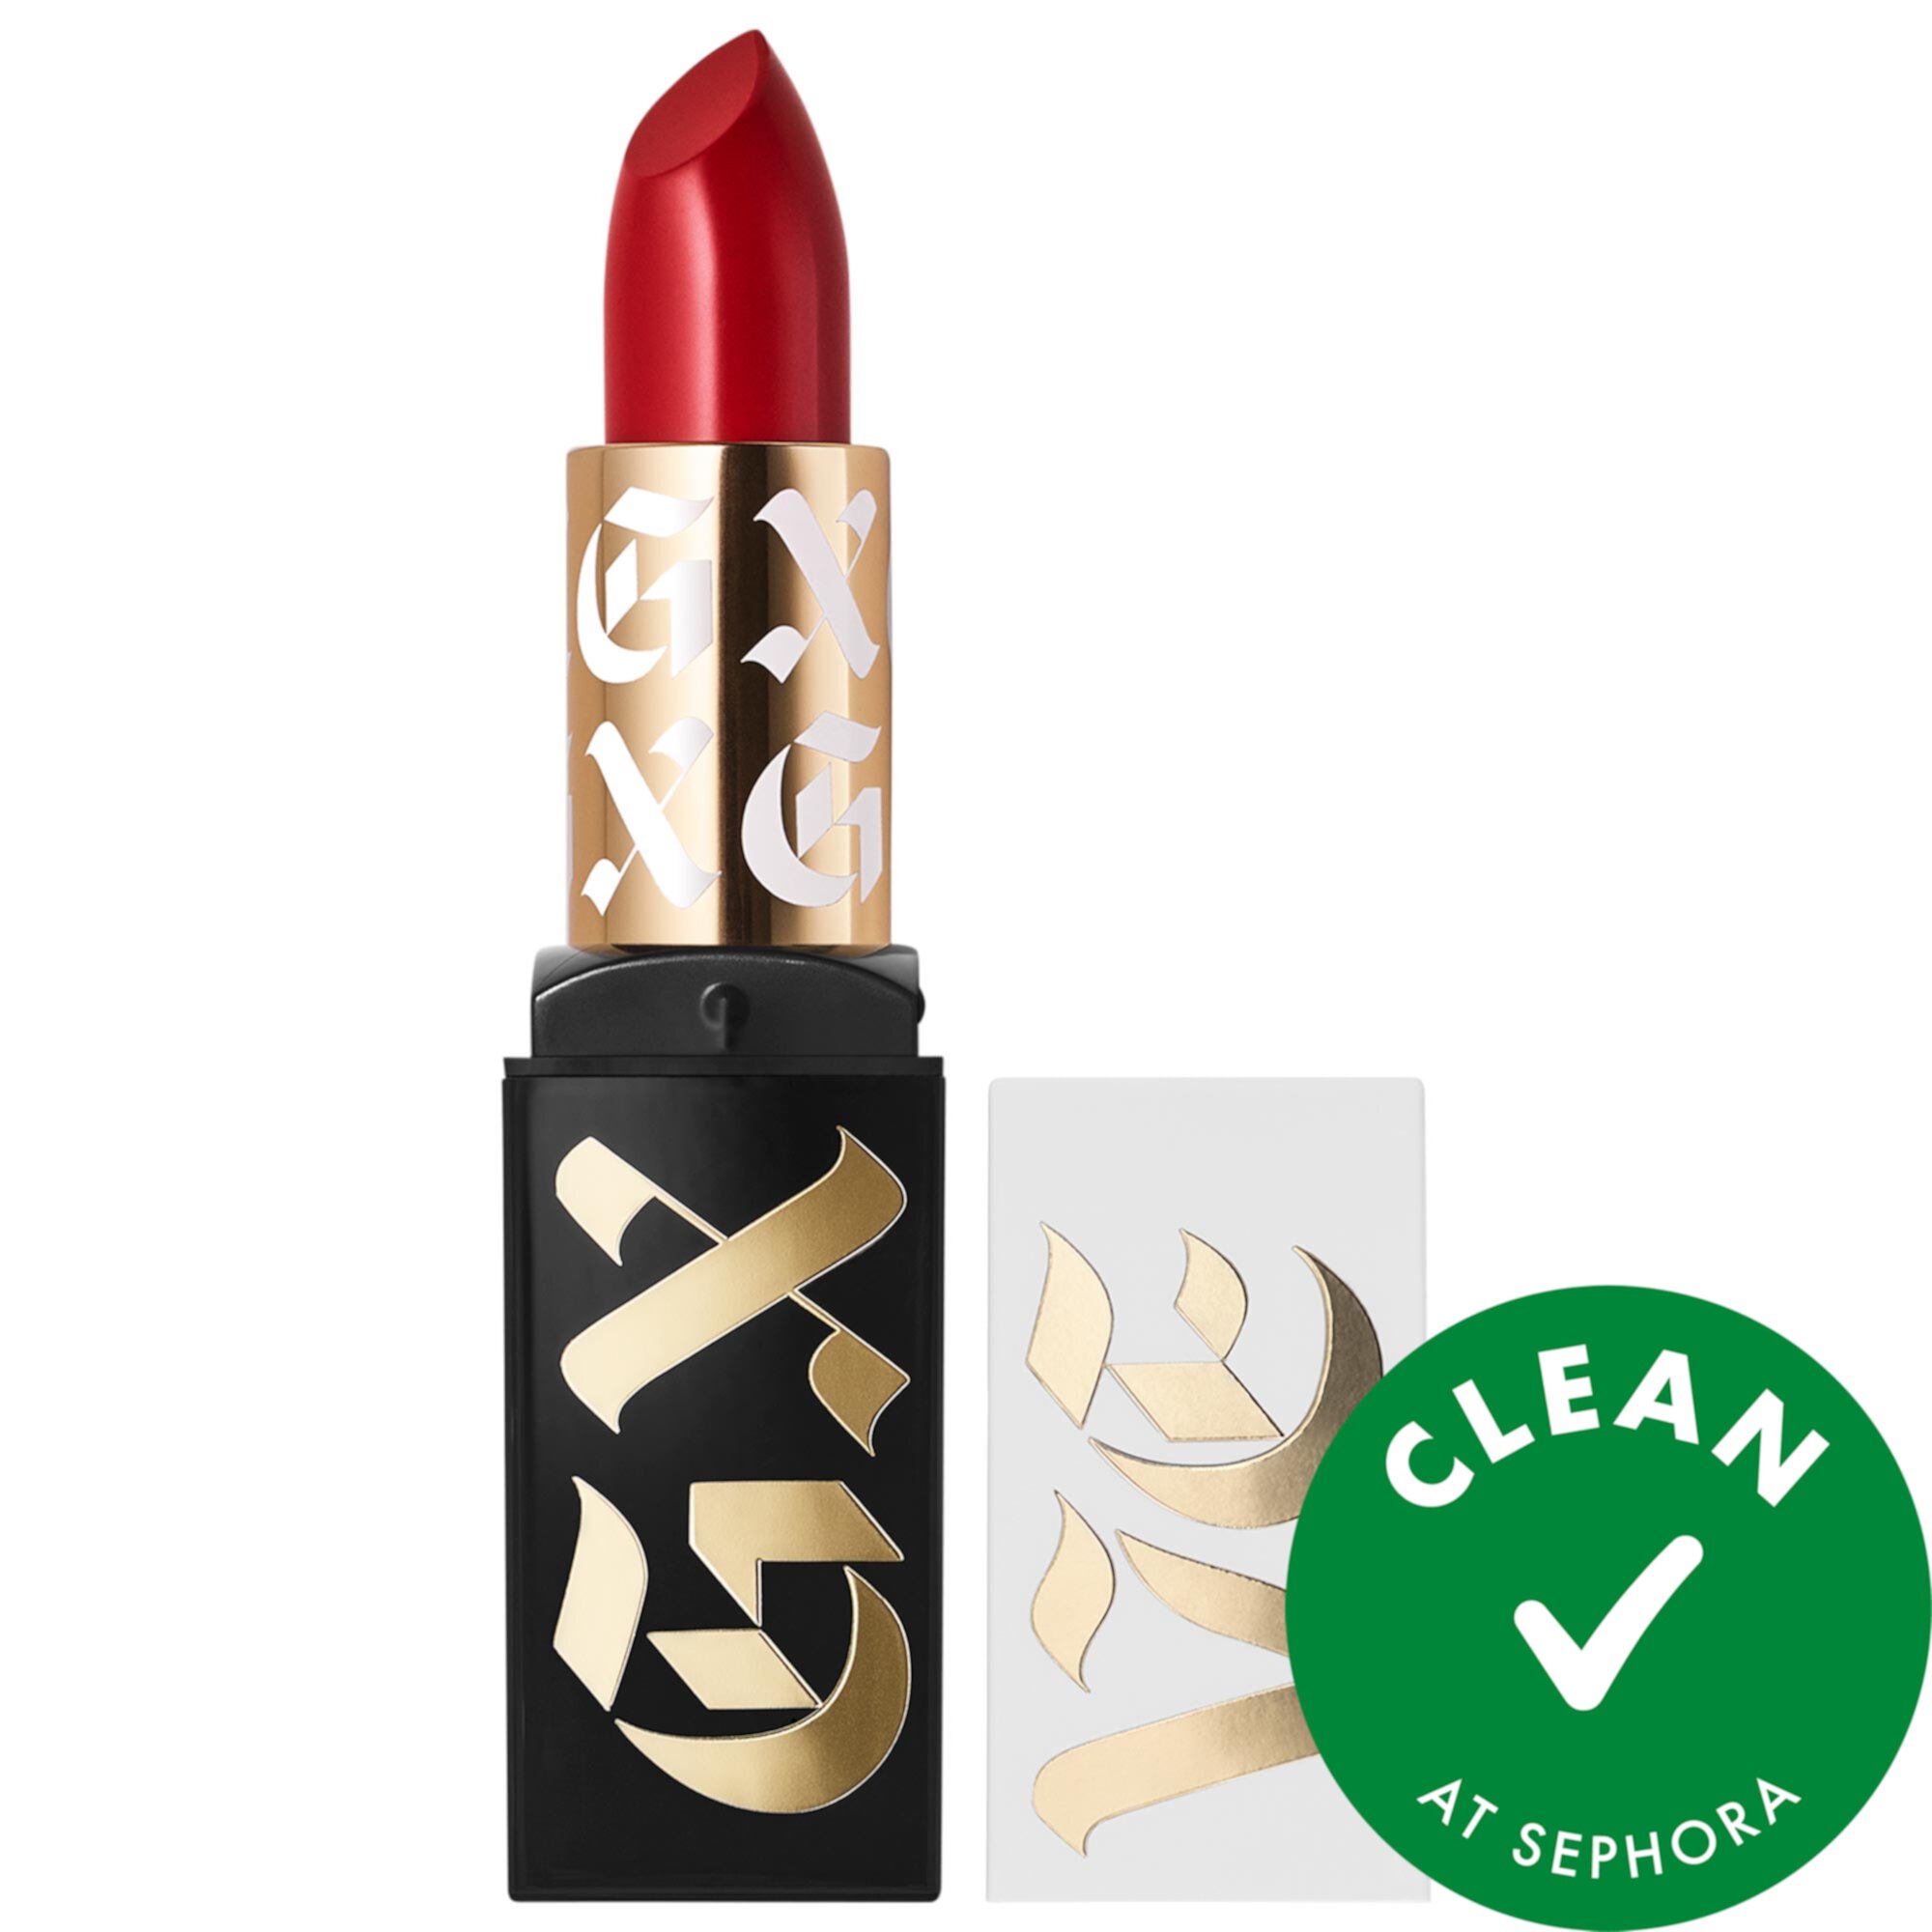 Anaheim Shine Clean High-Performance Satin Lipstick GXVE BY GWEN STEFANI